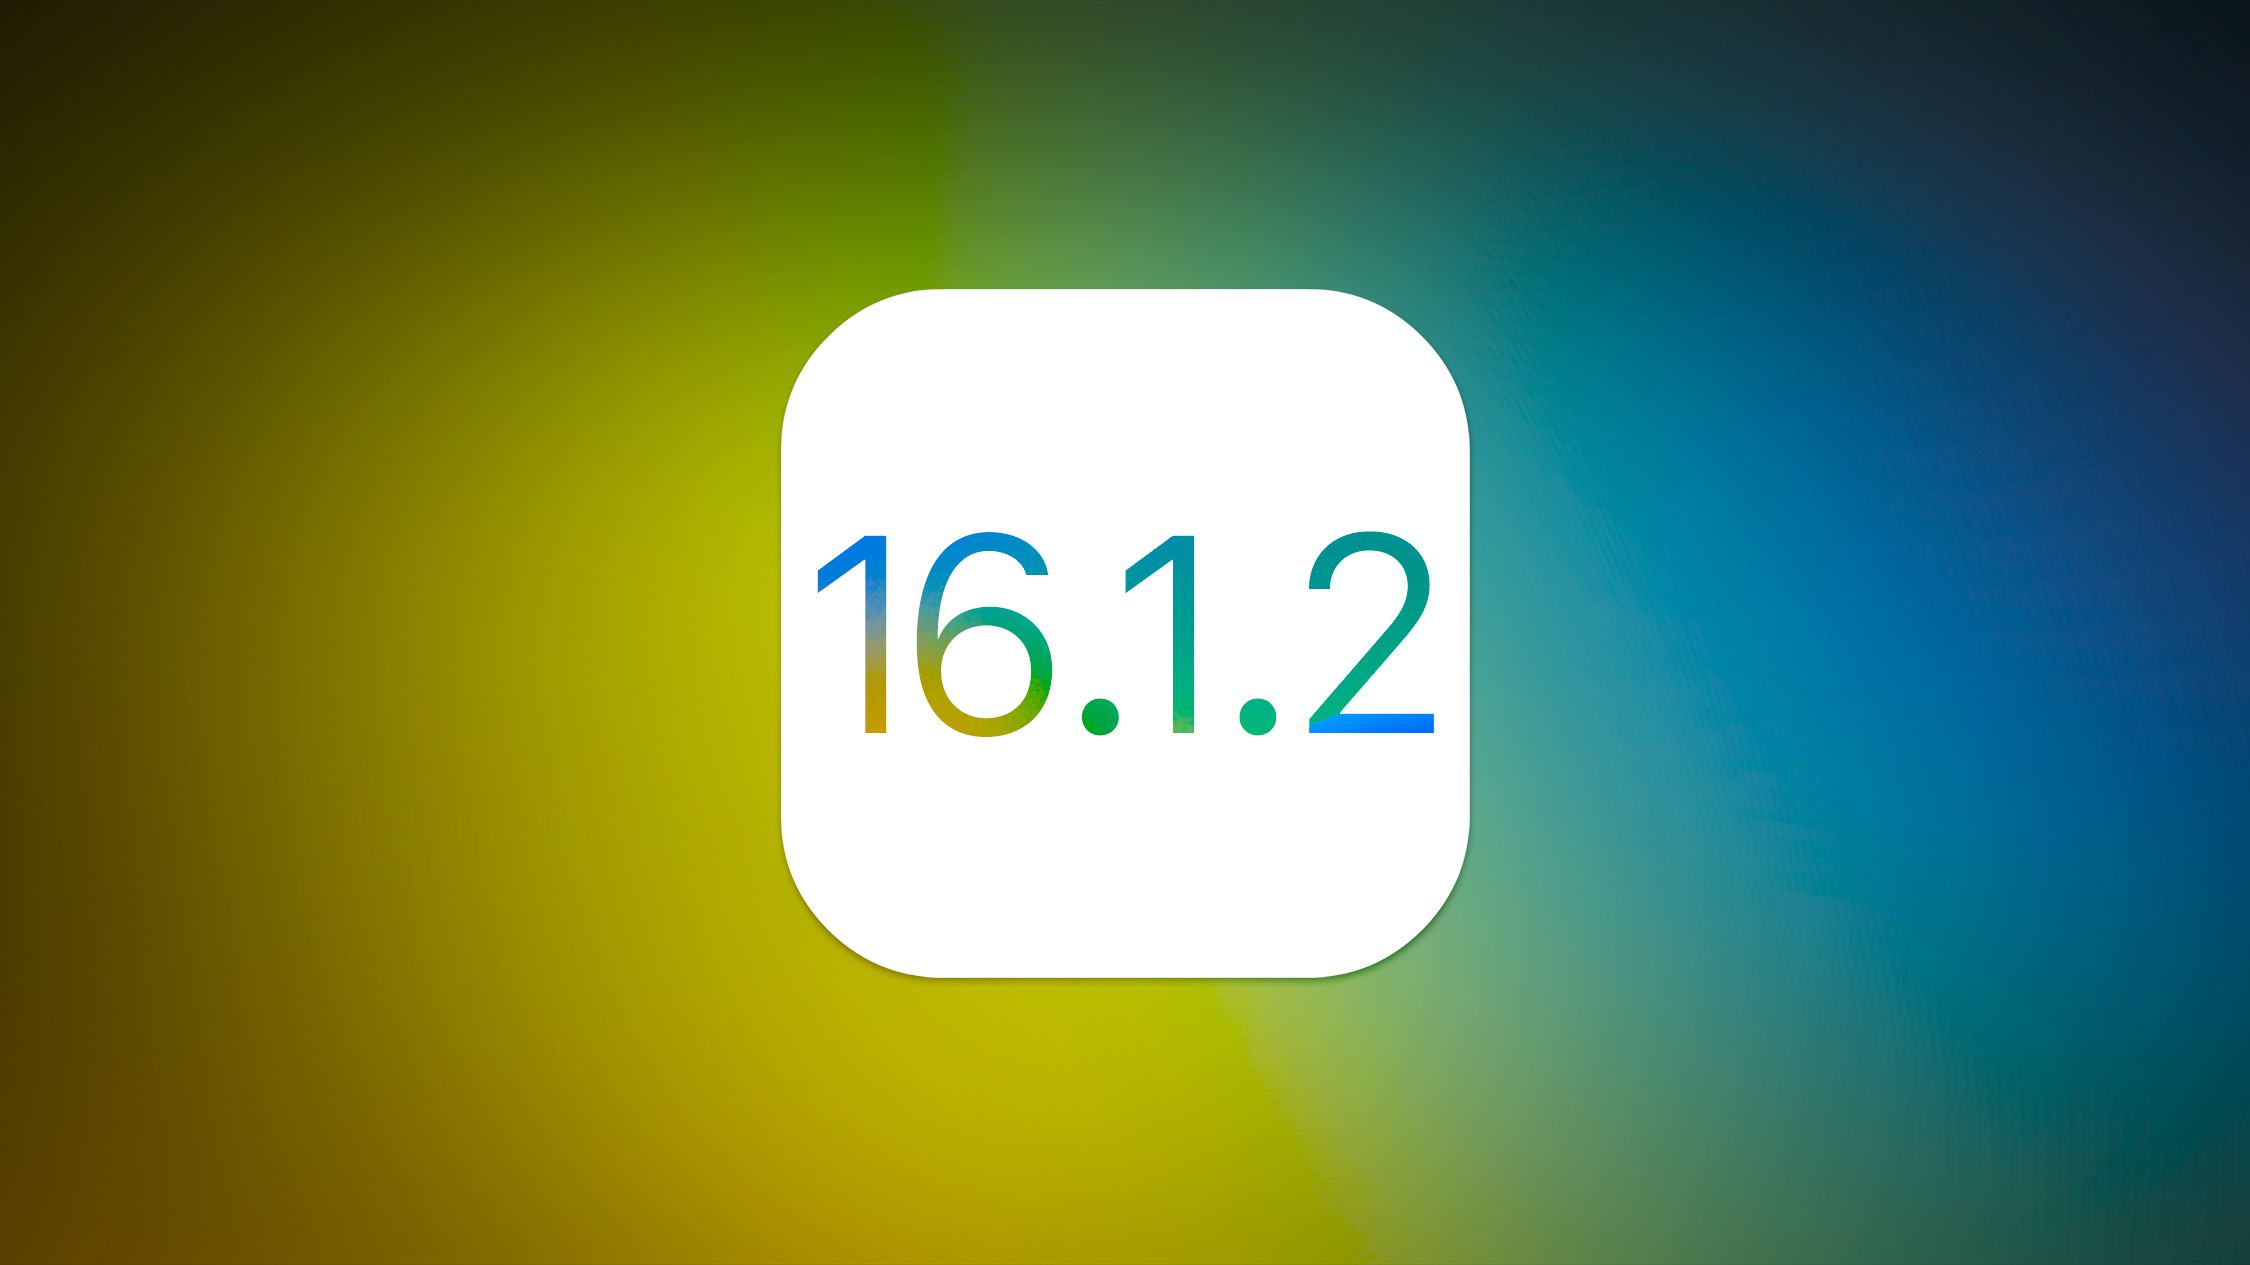 Apple przestało podpisywać iOS 16.1.2 po wydaniu iOS 16.2